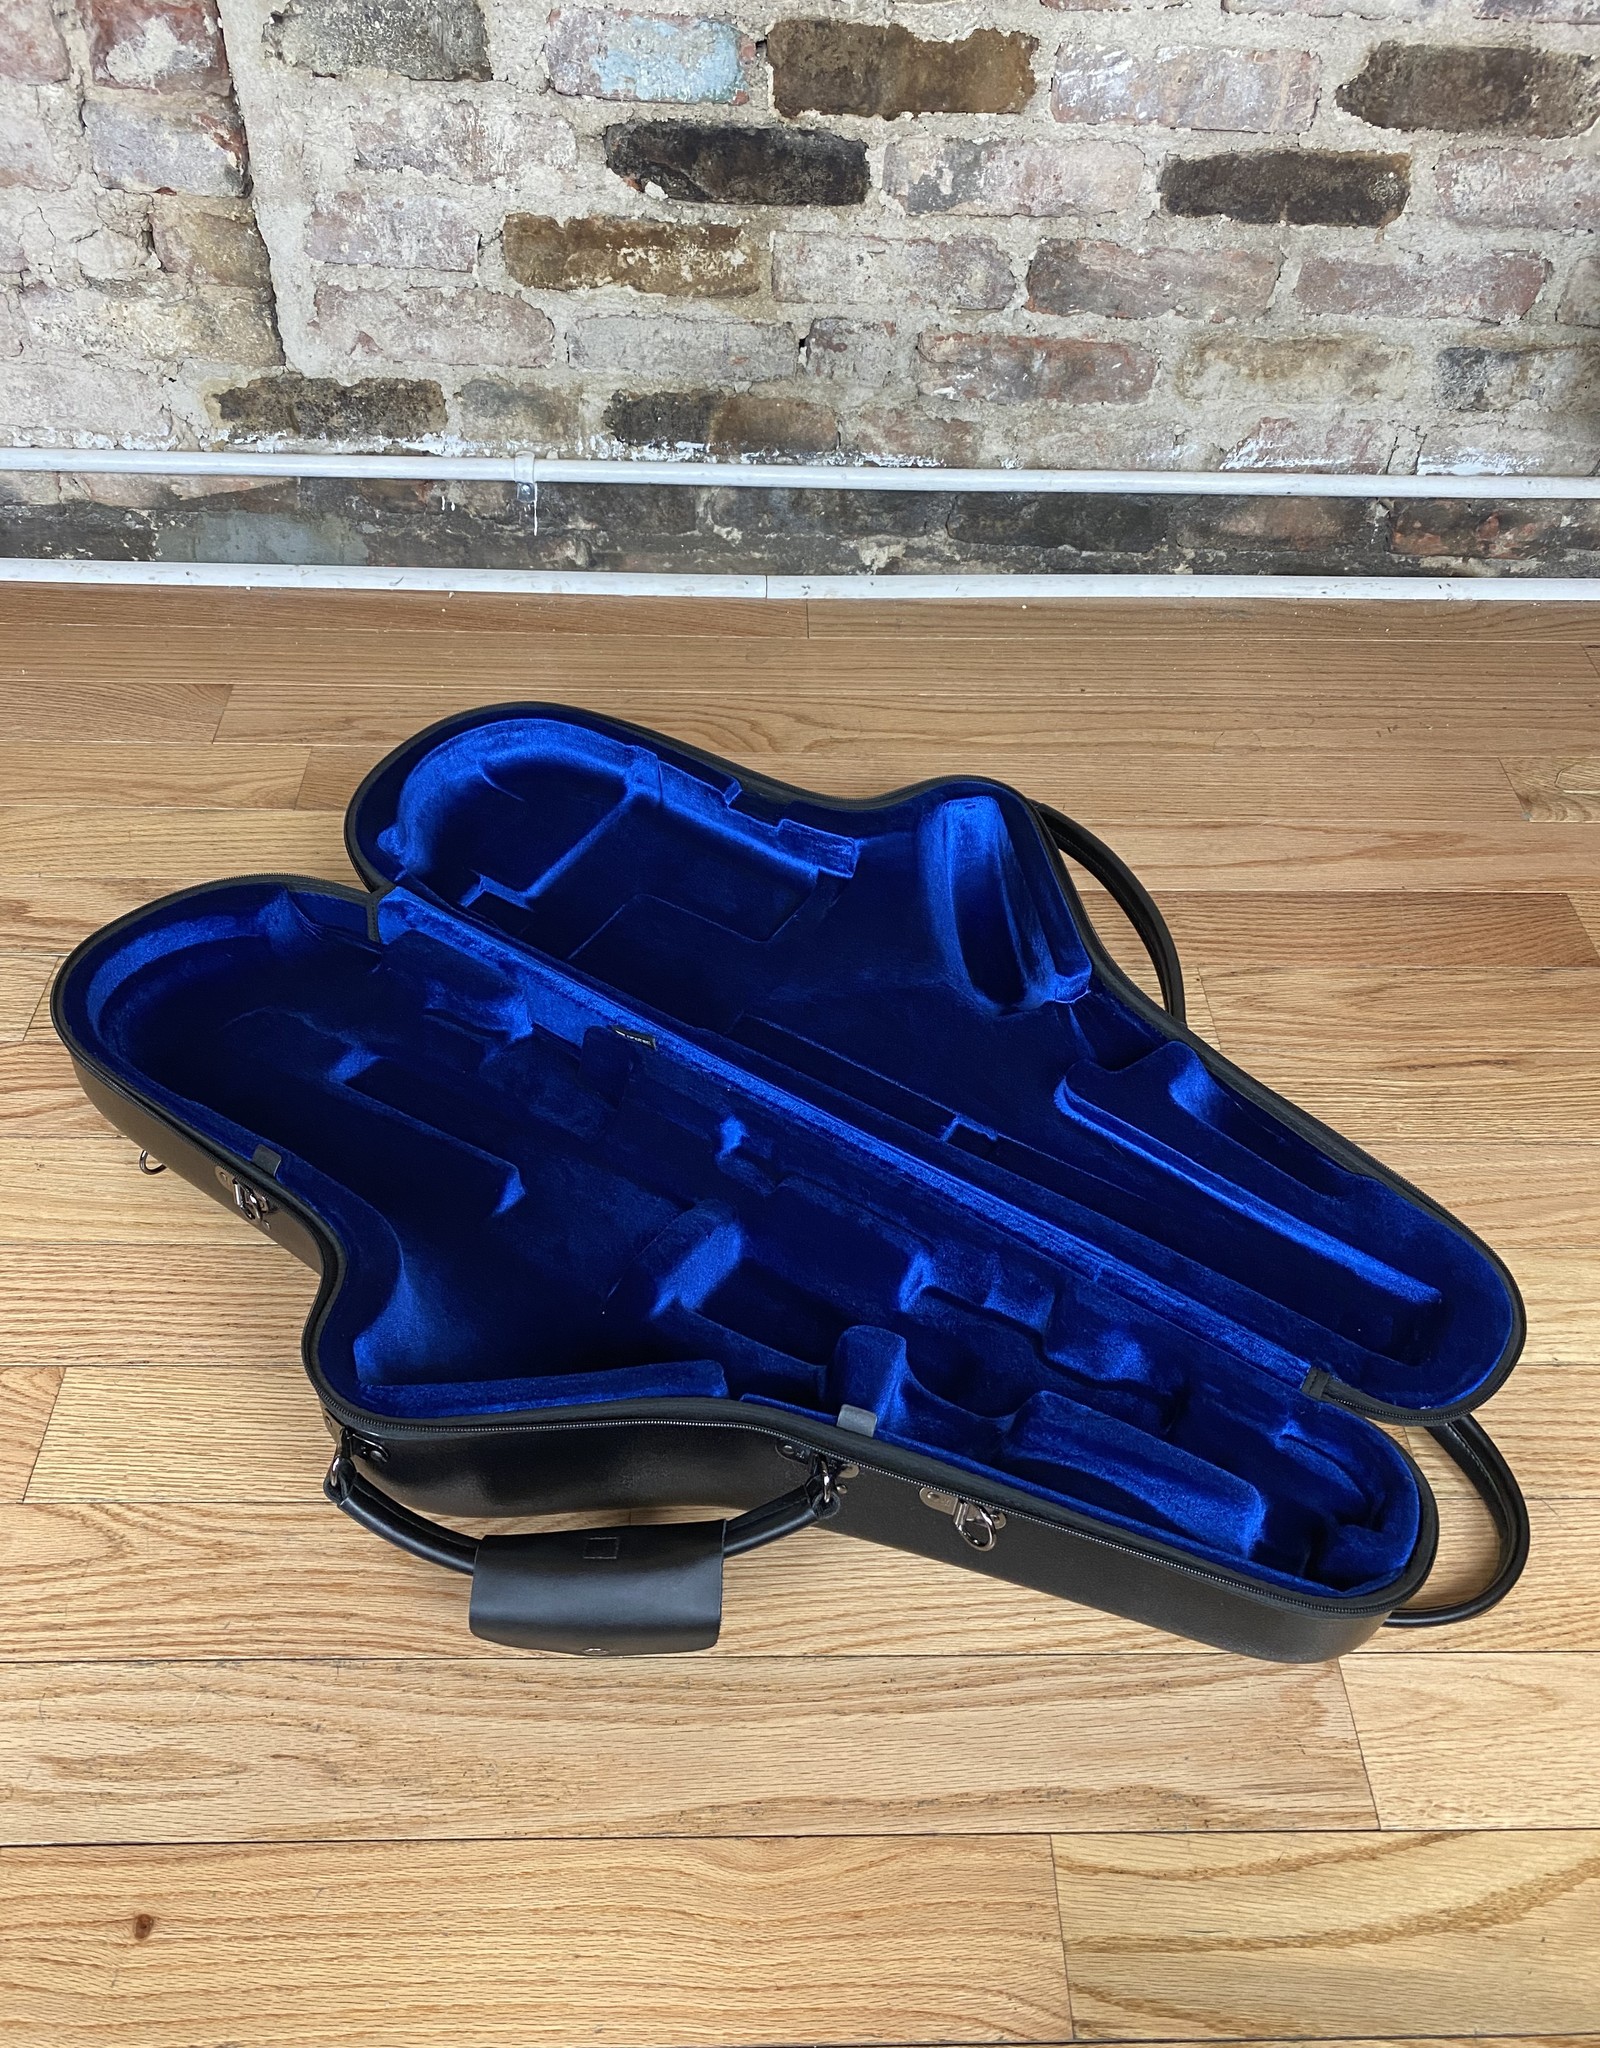 Protec Protec Tenor Saxophone Micro Sized Zip Case BM305CT